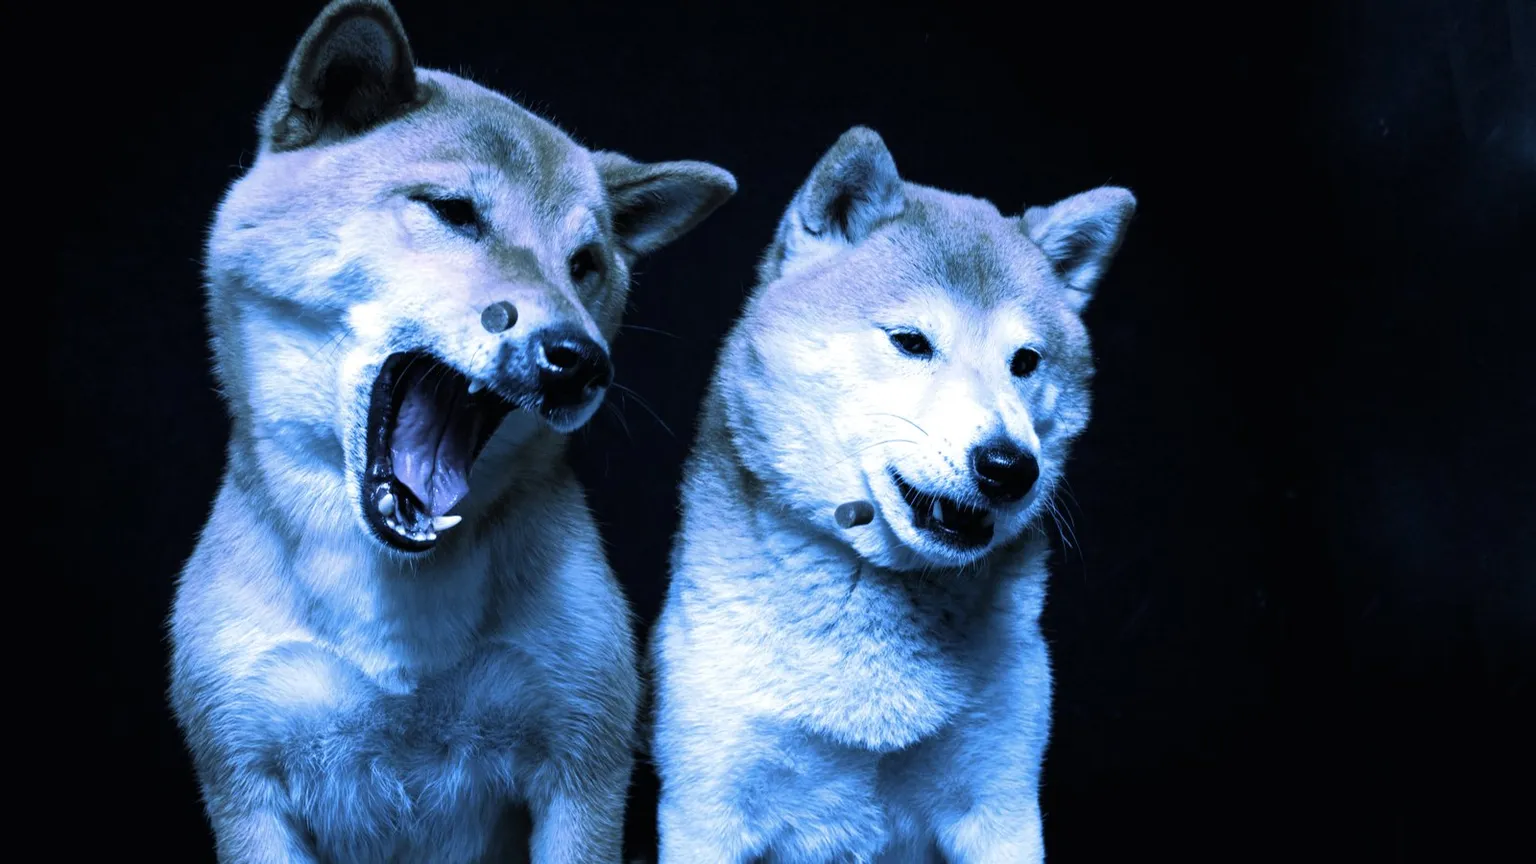 Algunas de las monedas meme más populares están relacionadas con los perros. Imagen: Shutterstock